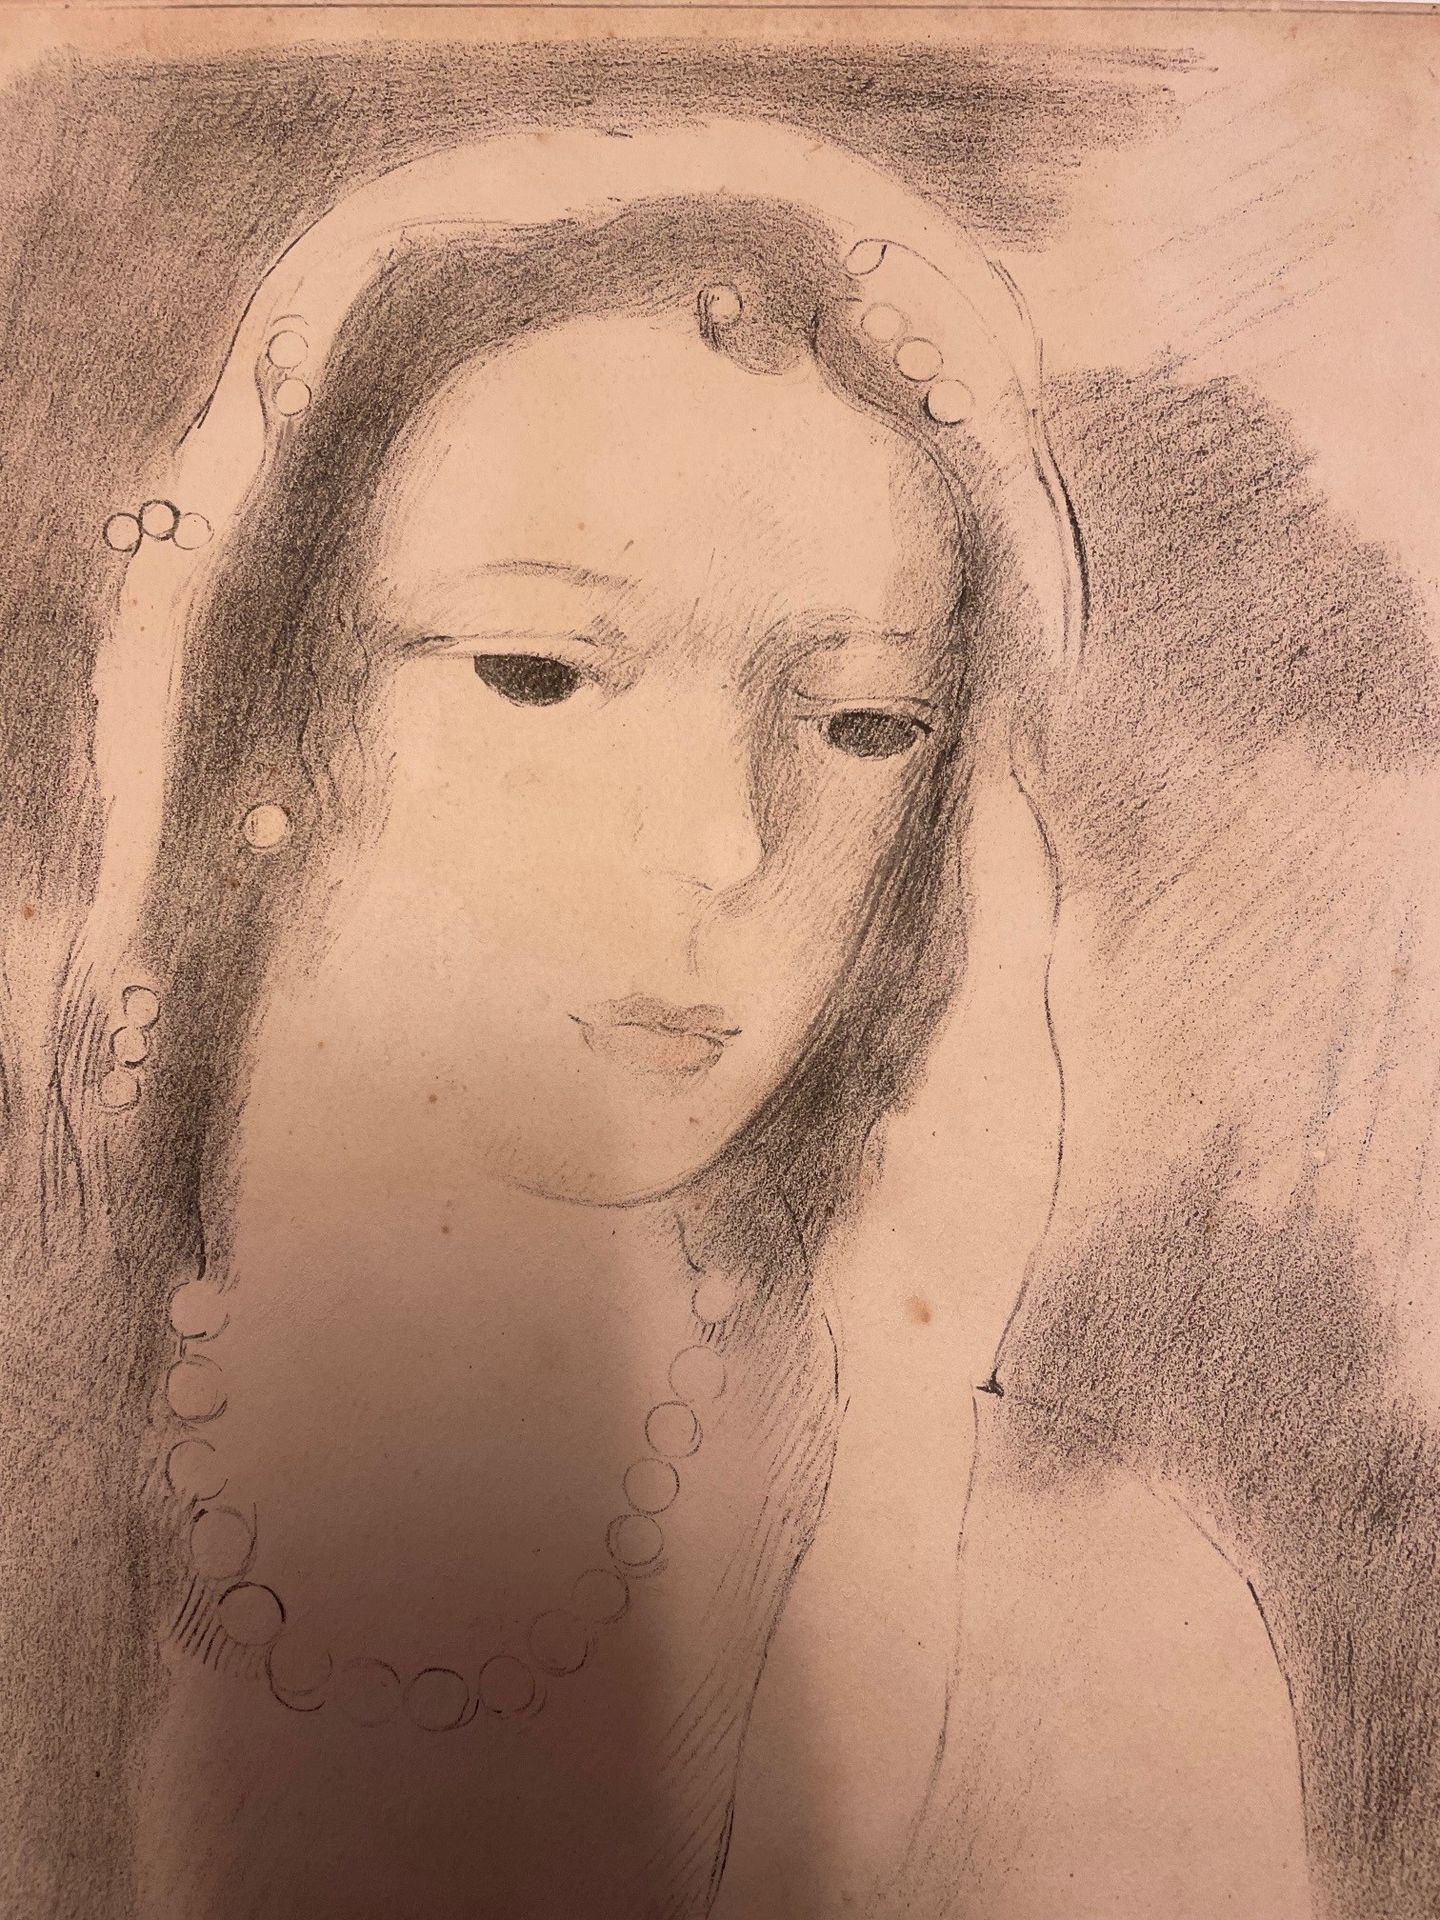 Null "Portrait de jeune femme au foulard"

Pièce encadrée, porte signature.